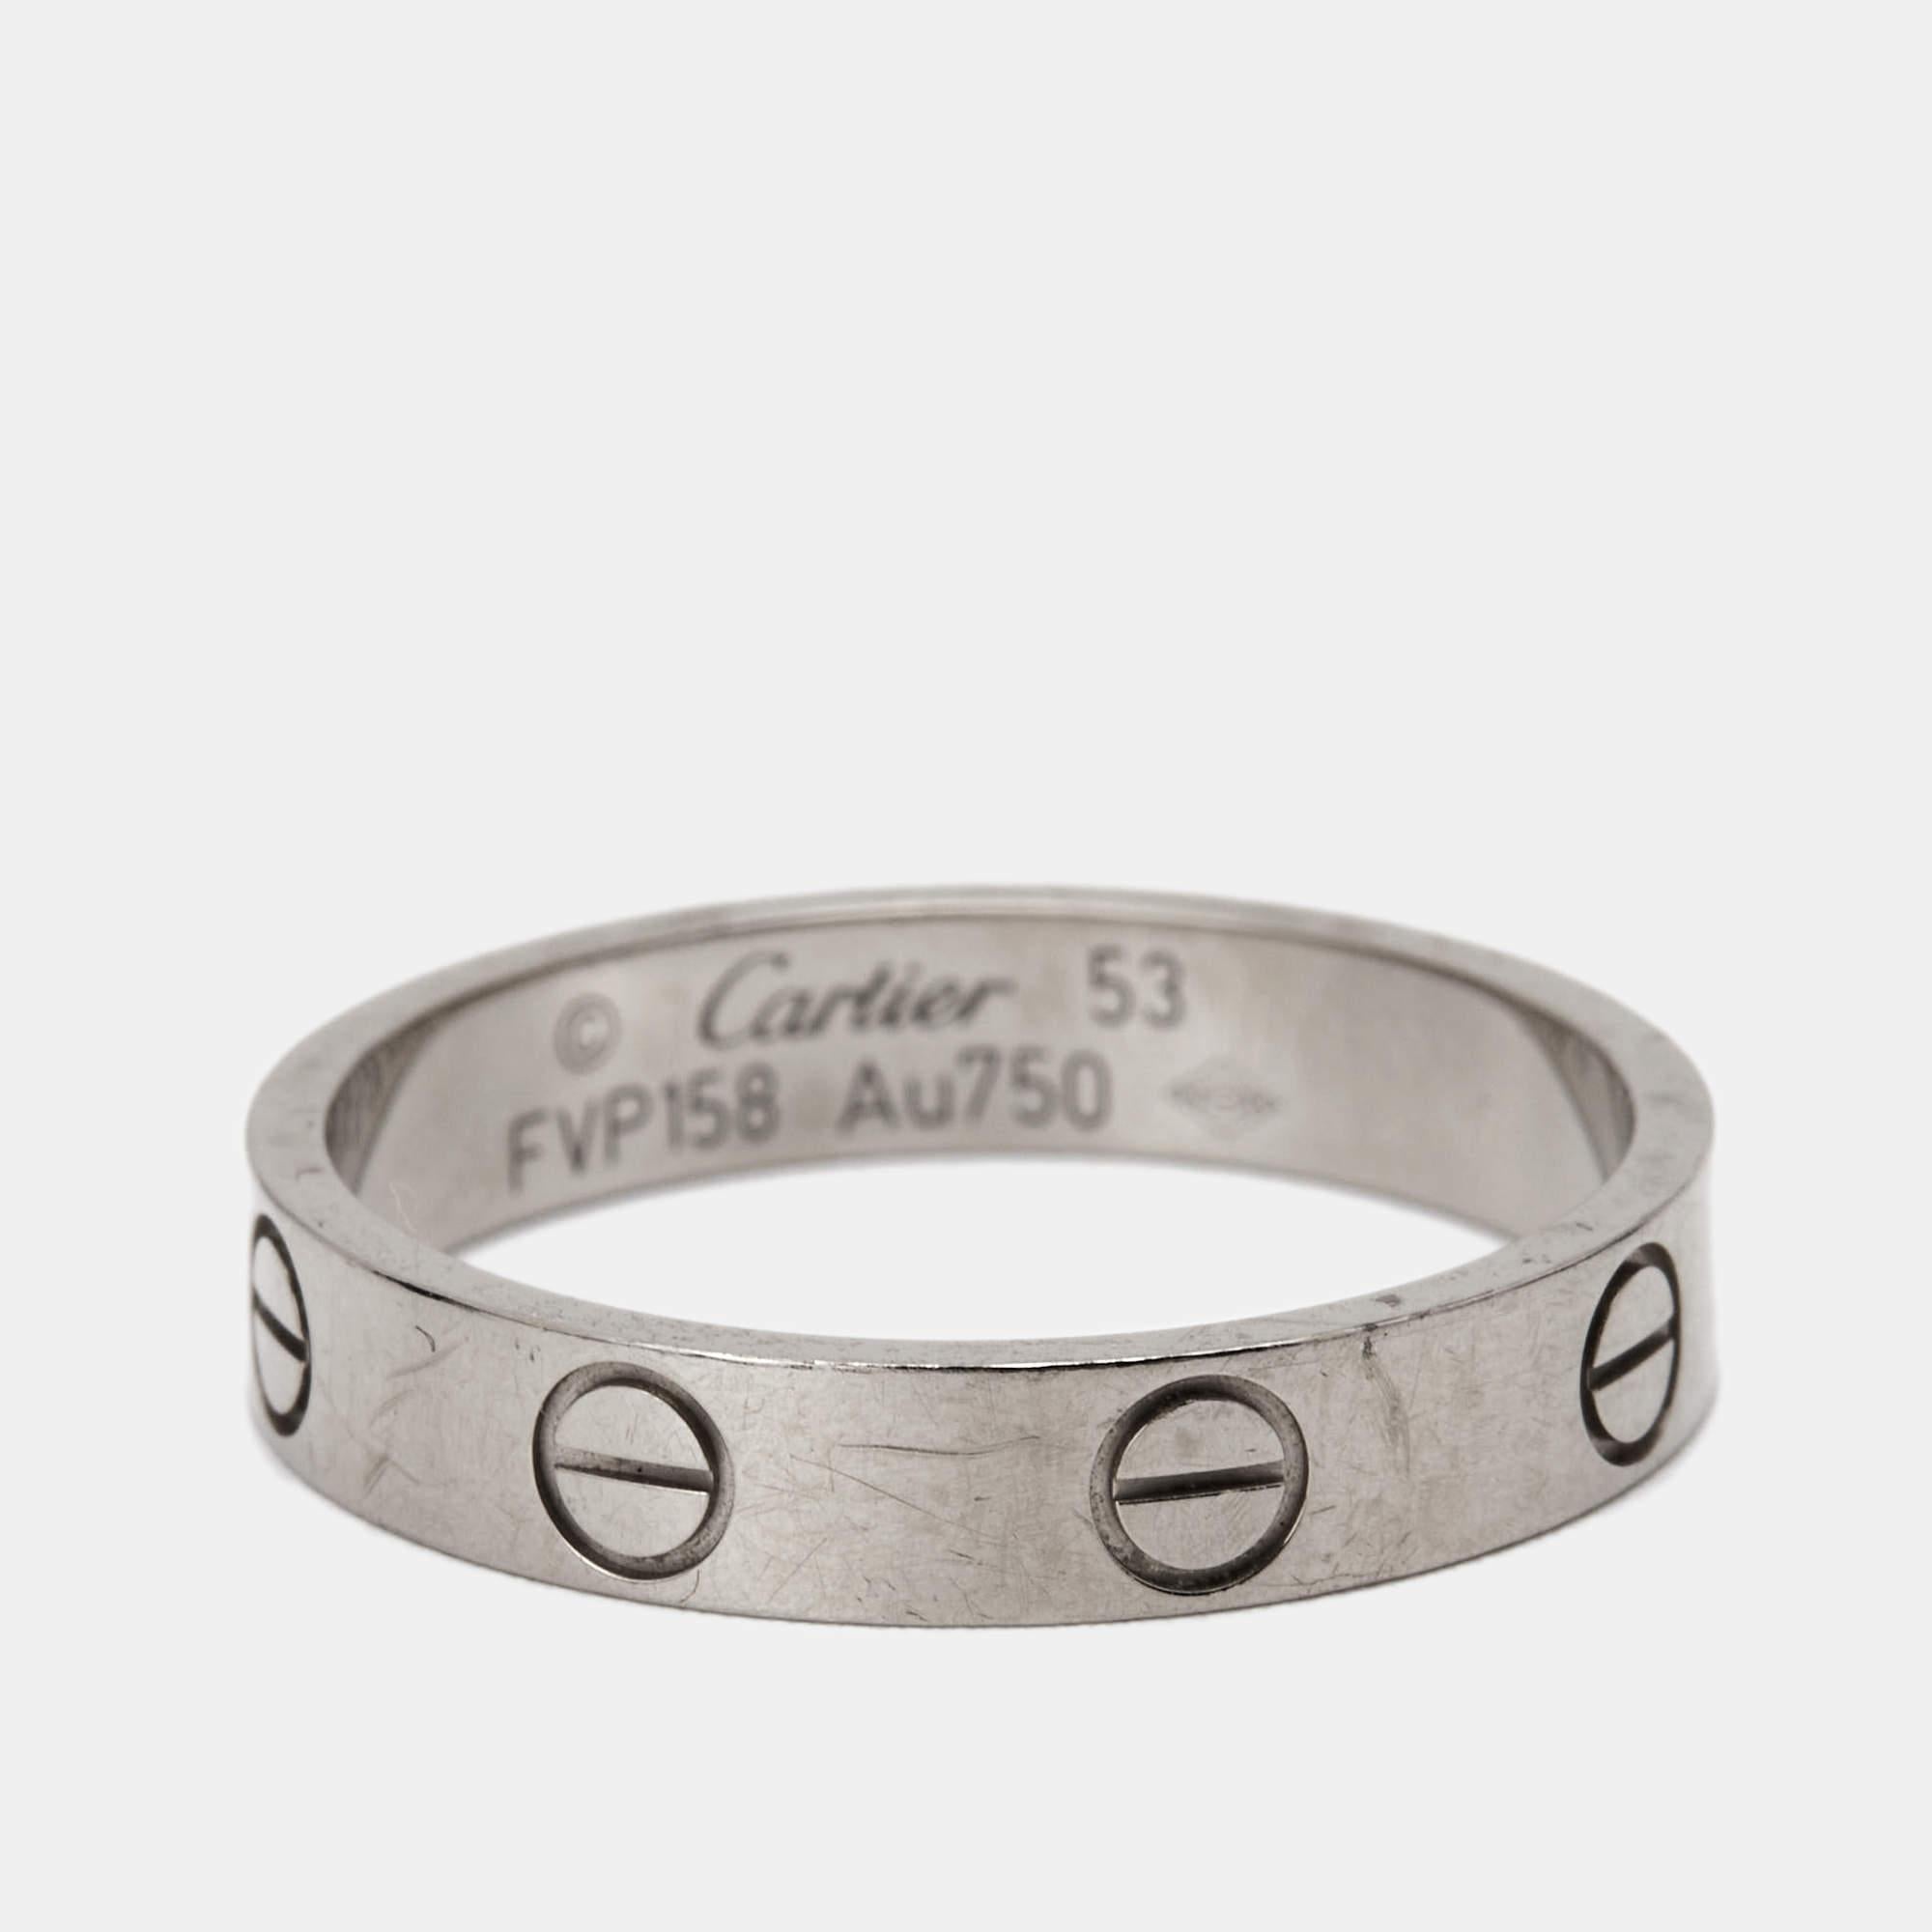 Cartier Love 18 Karat Weißgold Schmaler Ehering Größe 53 3